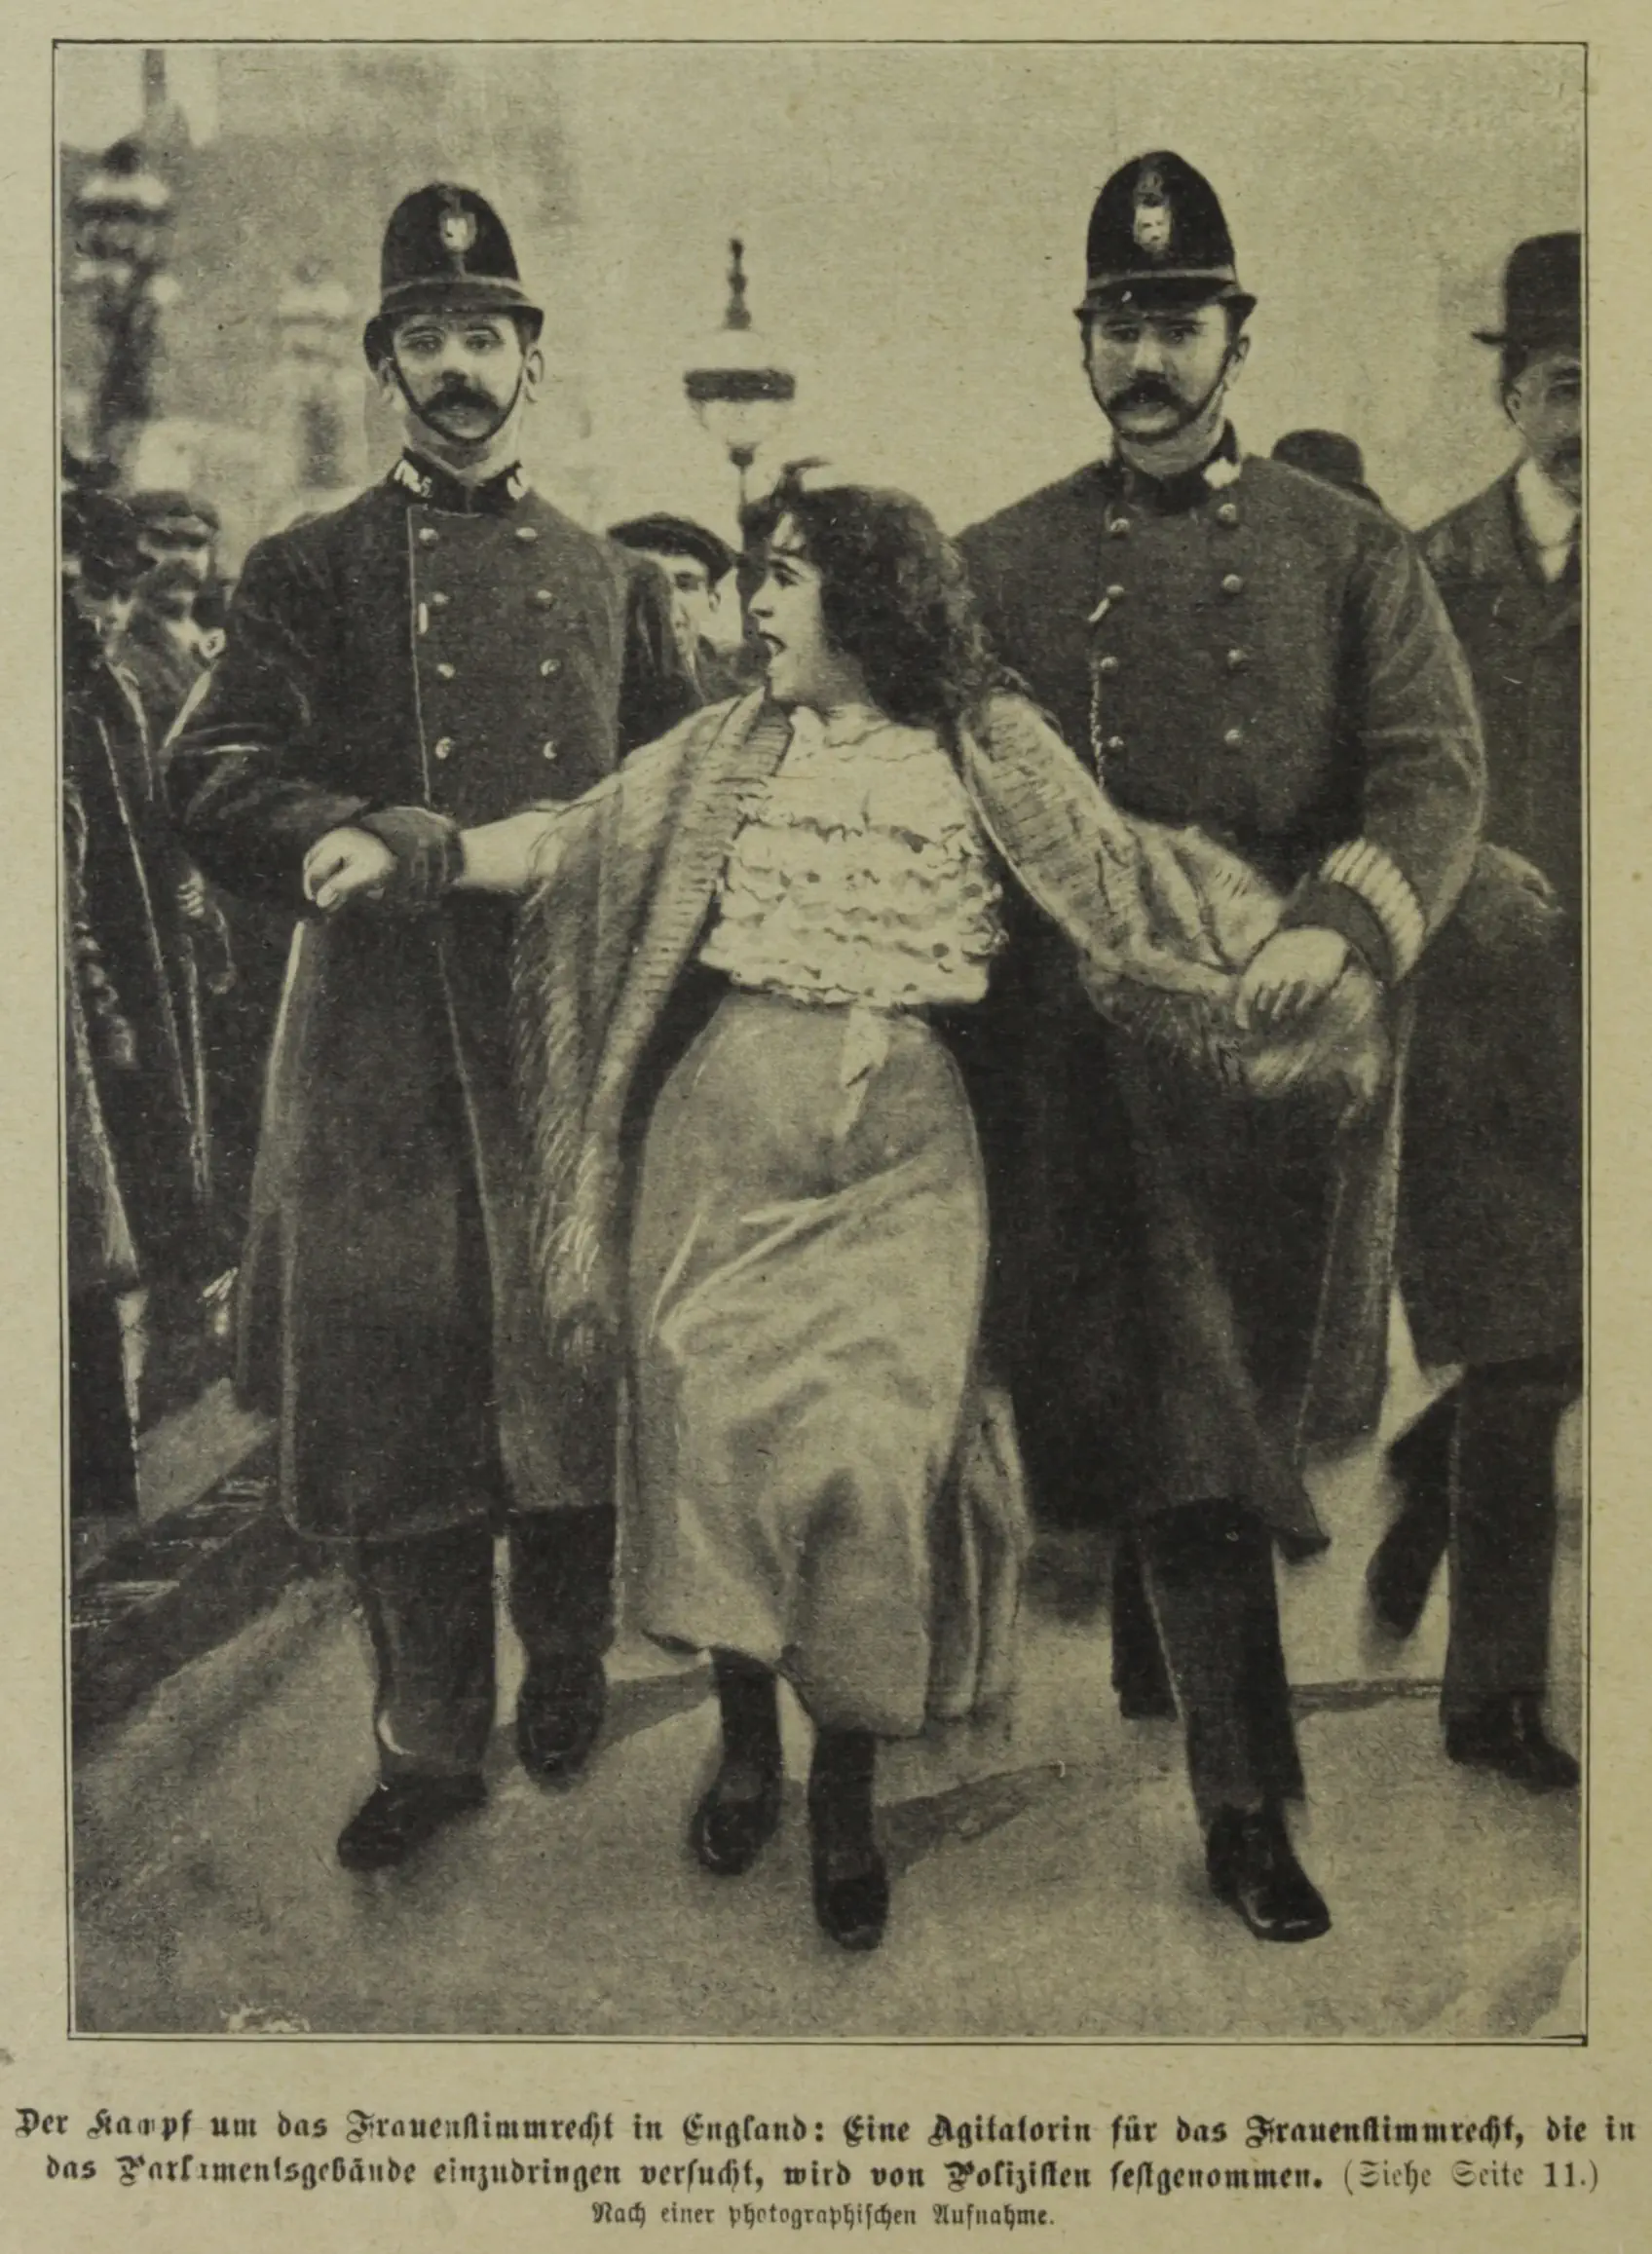 Die Abbildung zeigt eine Aktivistin für das Frauenwahlrecht in England, die von zwei uniformierten Polizisten abgeführt wird.